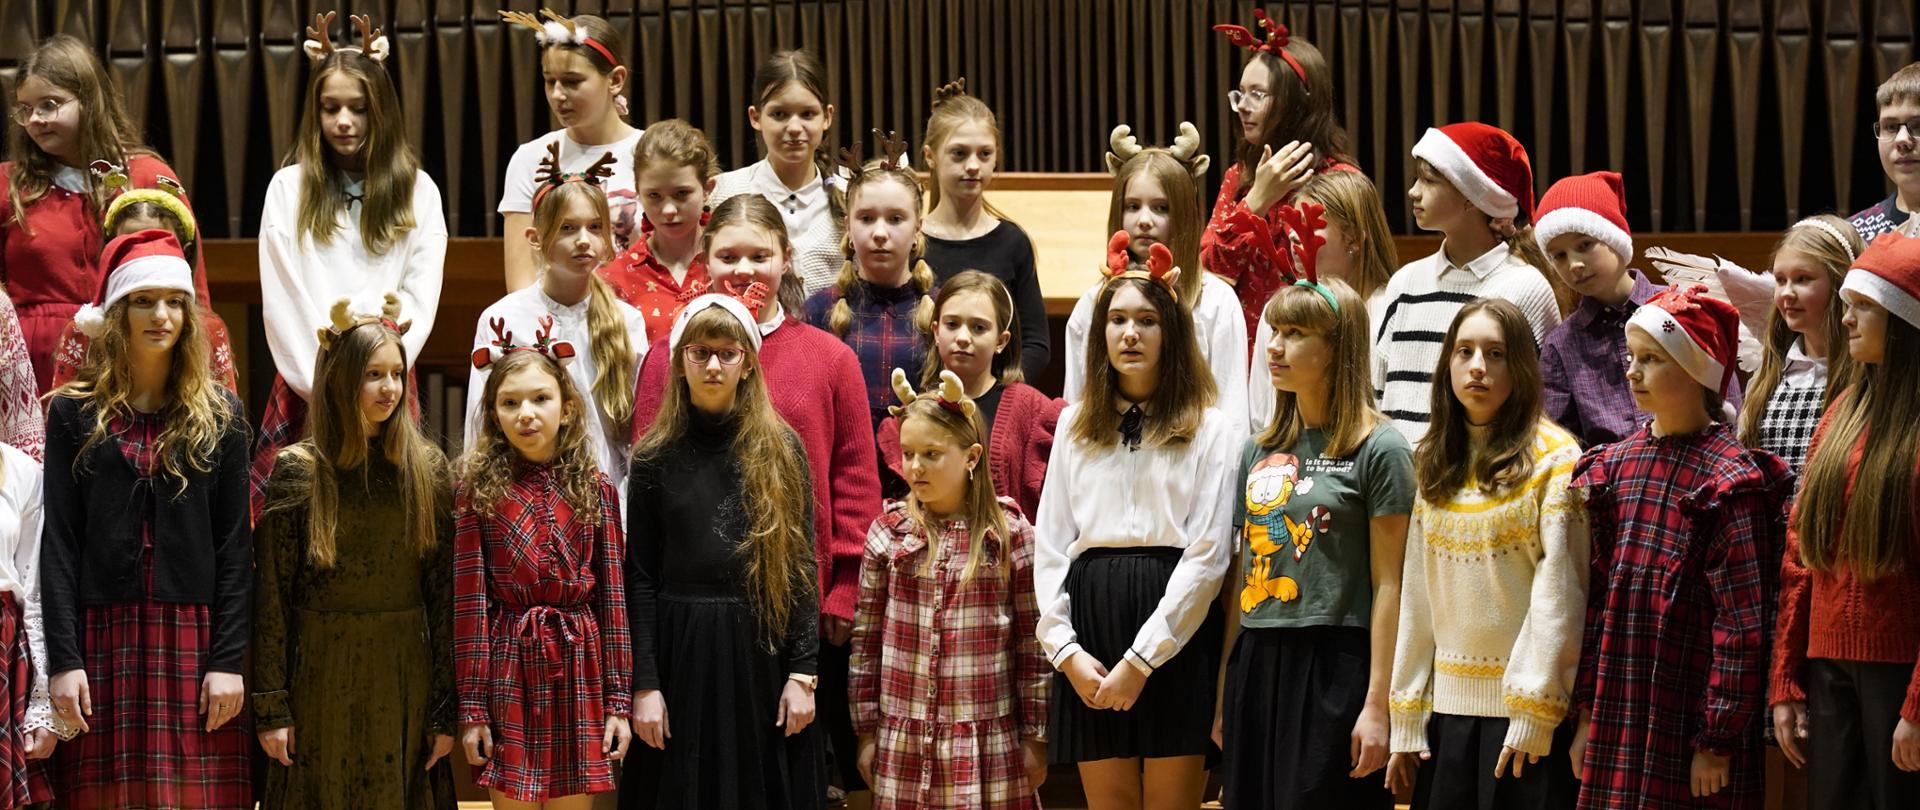 Chór dziecięcy na scenie sali koncertowej. Uczniowie stoją w trzech rzędach. Uczniowie ubrani w stroje bożonarodzeniowe. Niektóre z nich maja na głowie czapki Mikołaja lub rogi renifera. Dzieci stoją na drewnianych ławkach. Za nimi w tle organy.